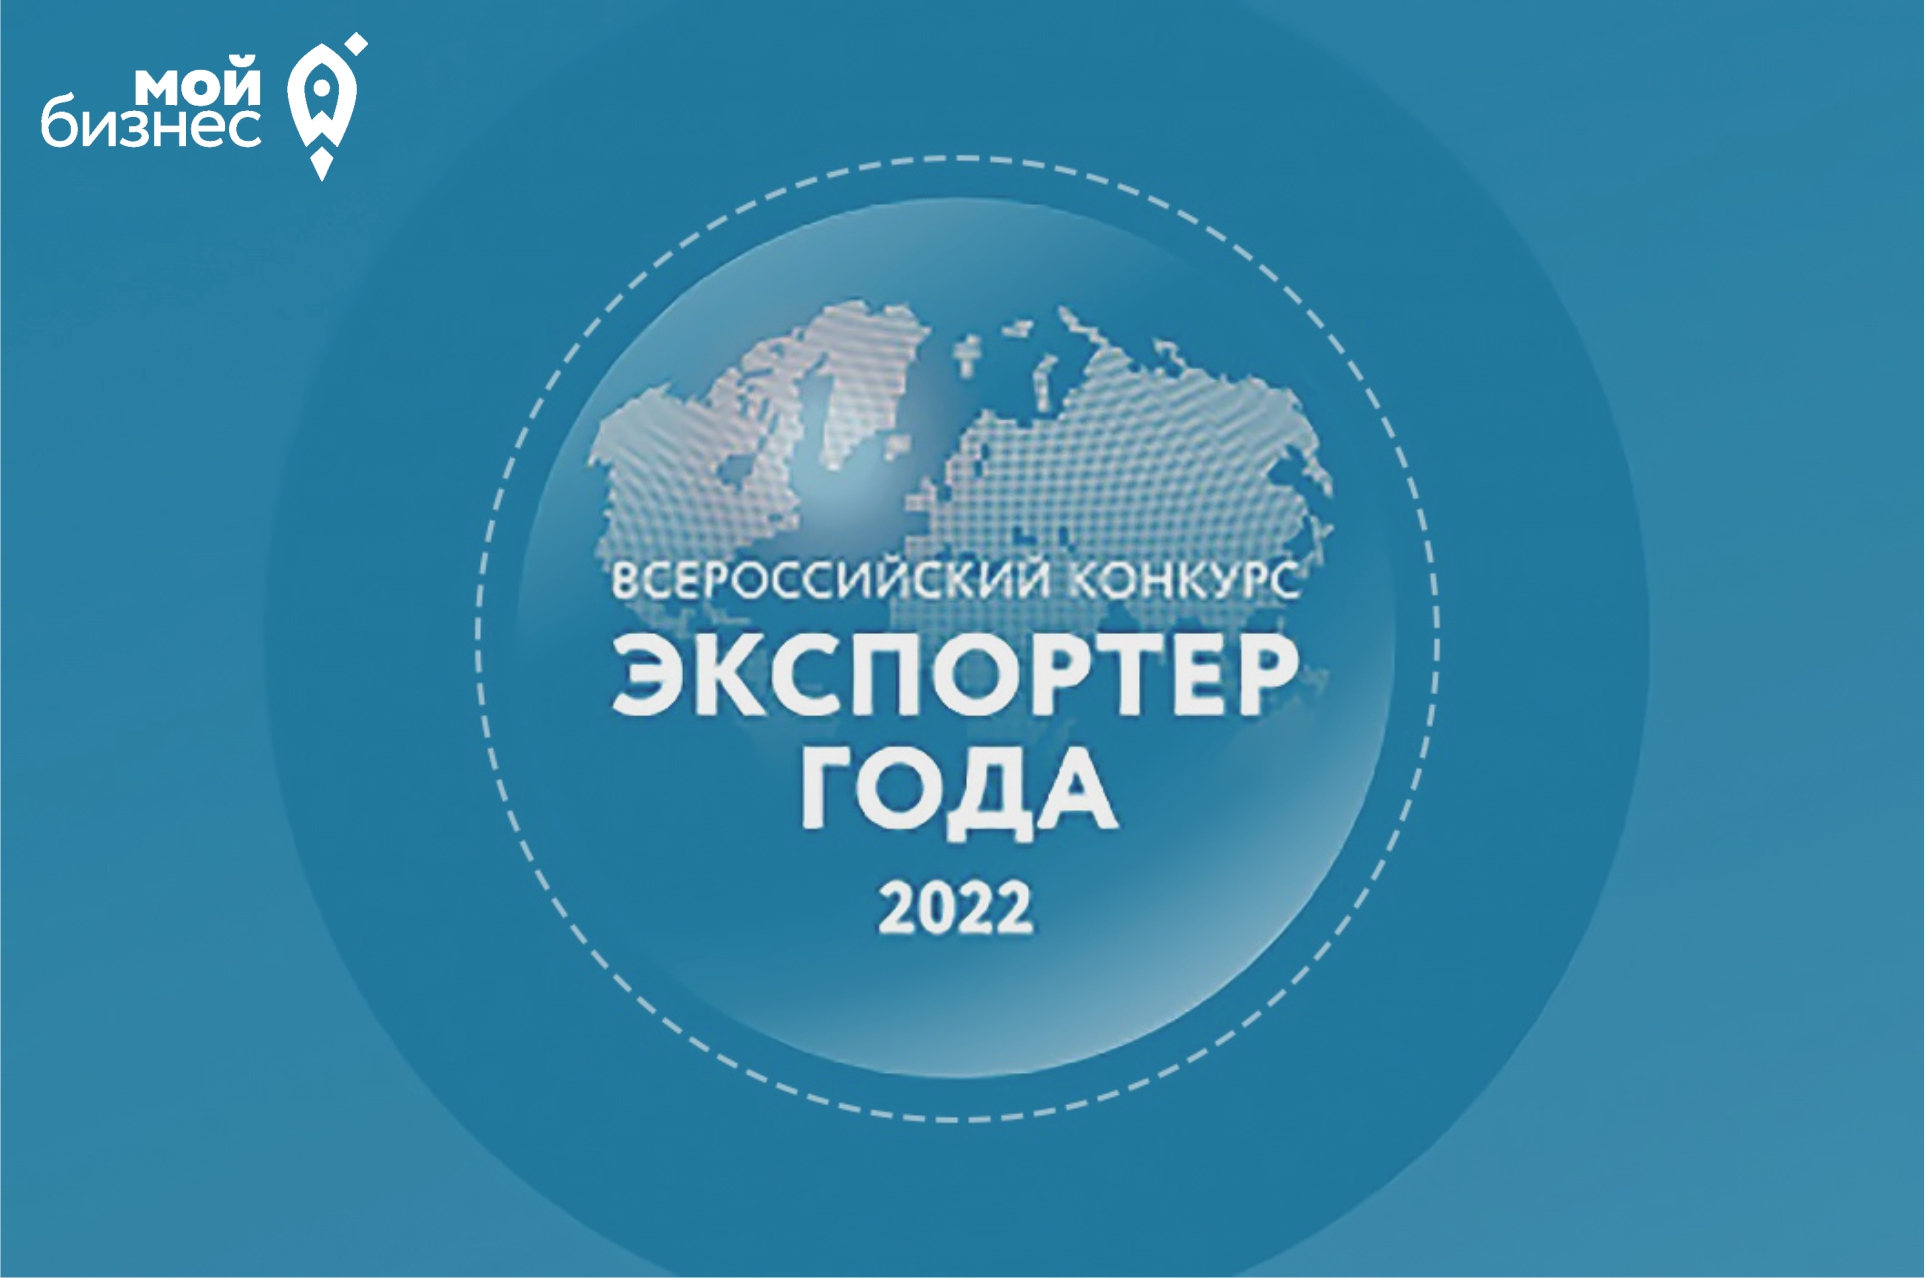 Волгоградские компании приглашают принять участие во Всероссийском конкурсе «Экспортер года 2022»